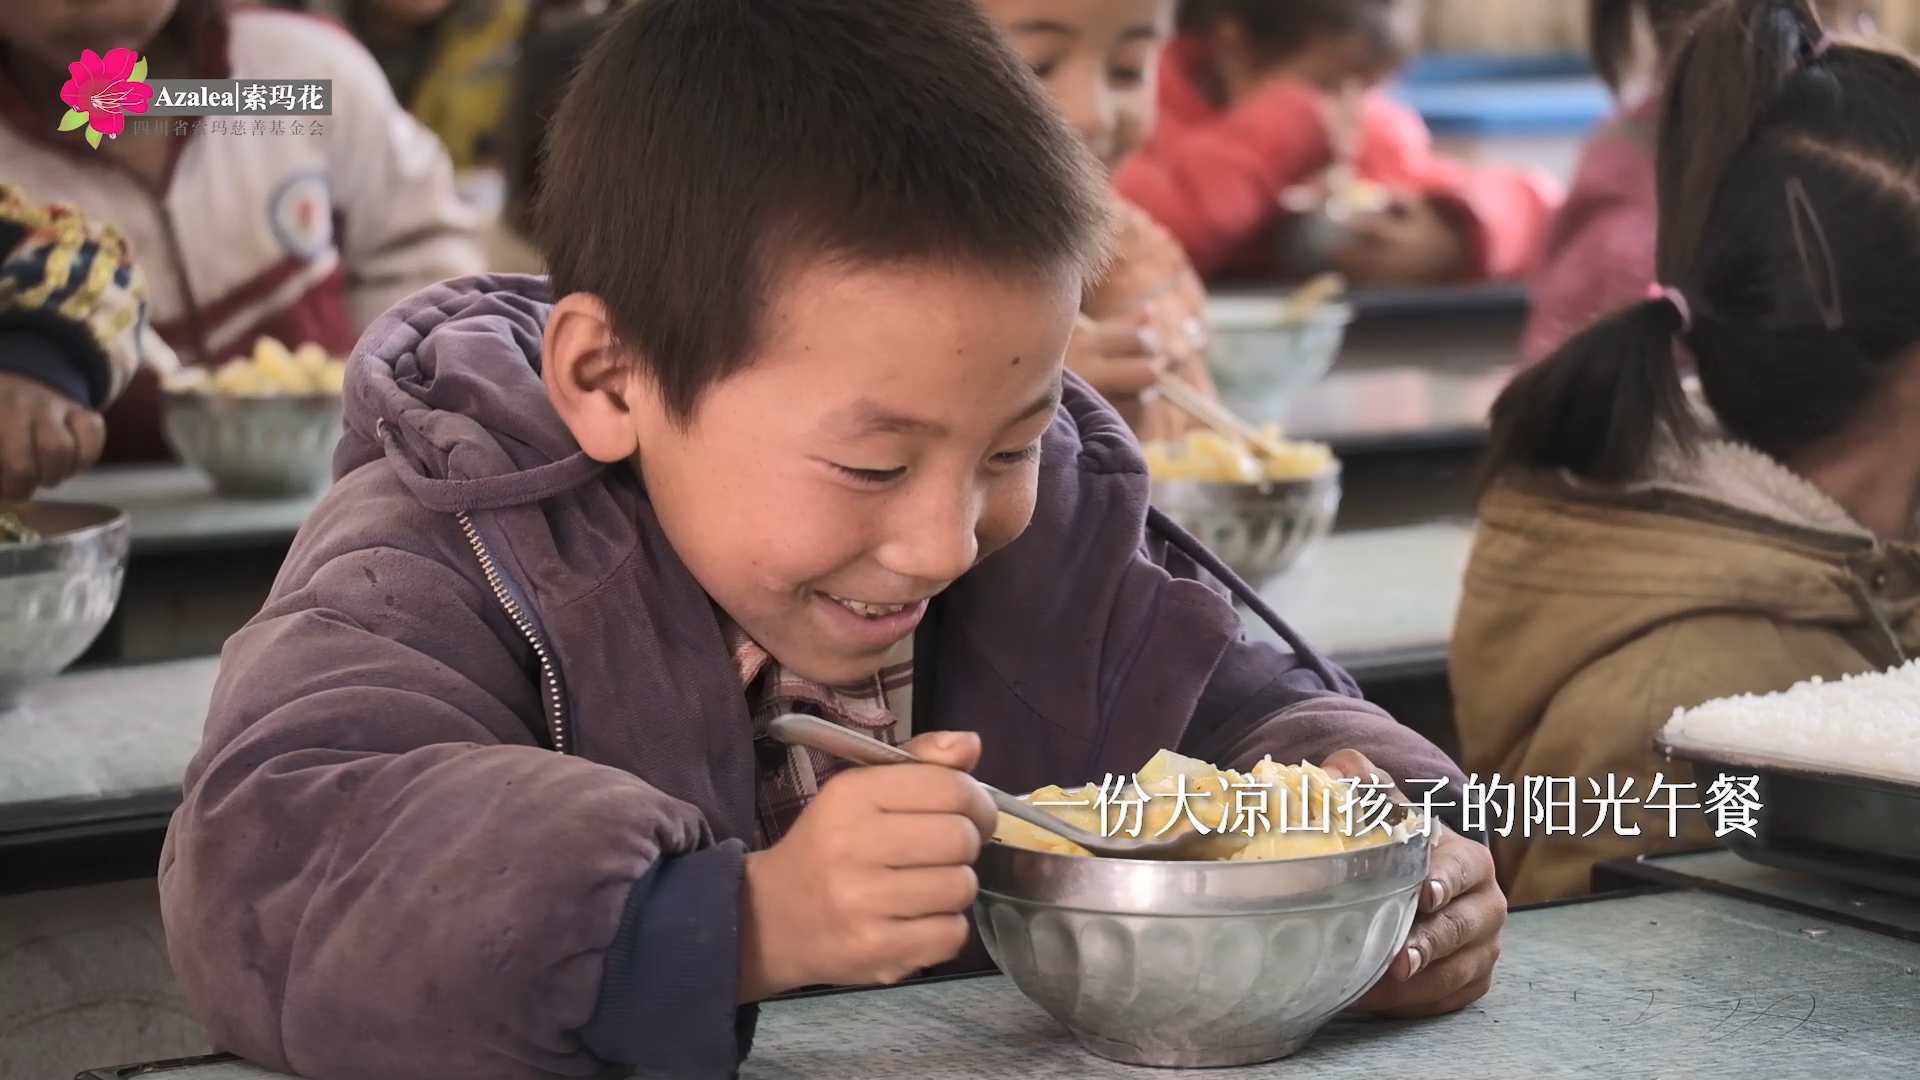 公益项目 | 索玛花阳光午餐宣传片